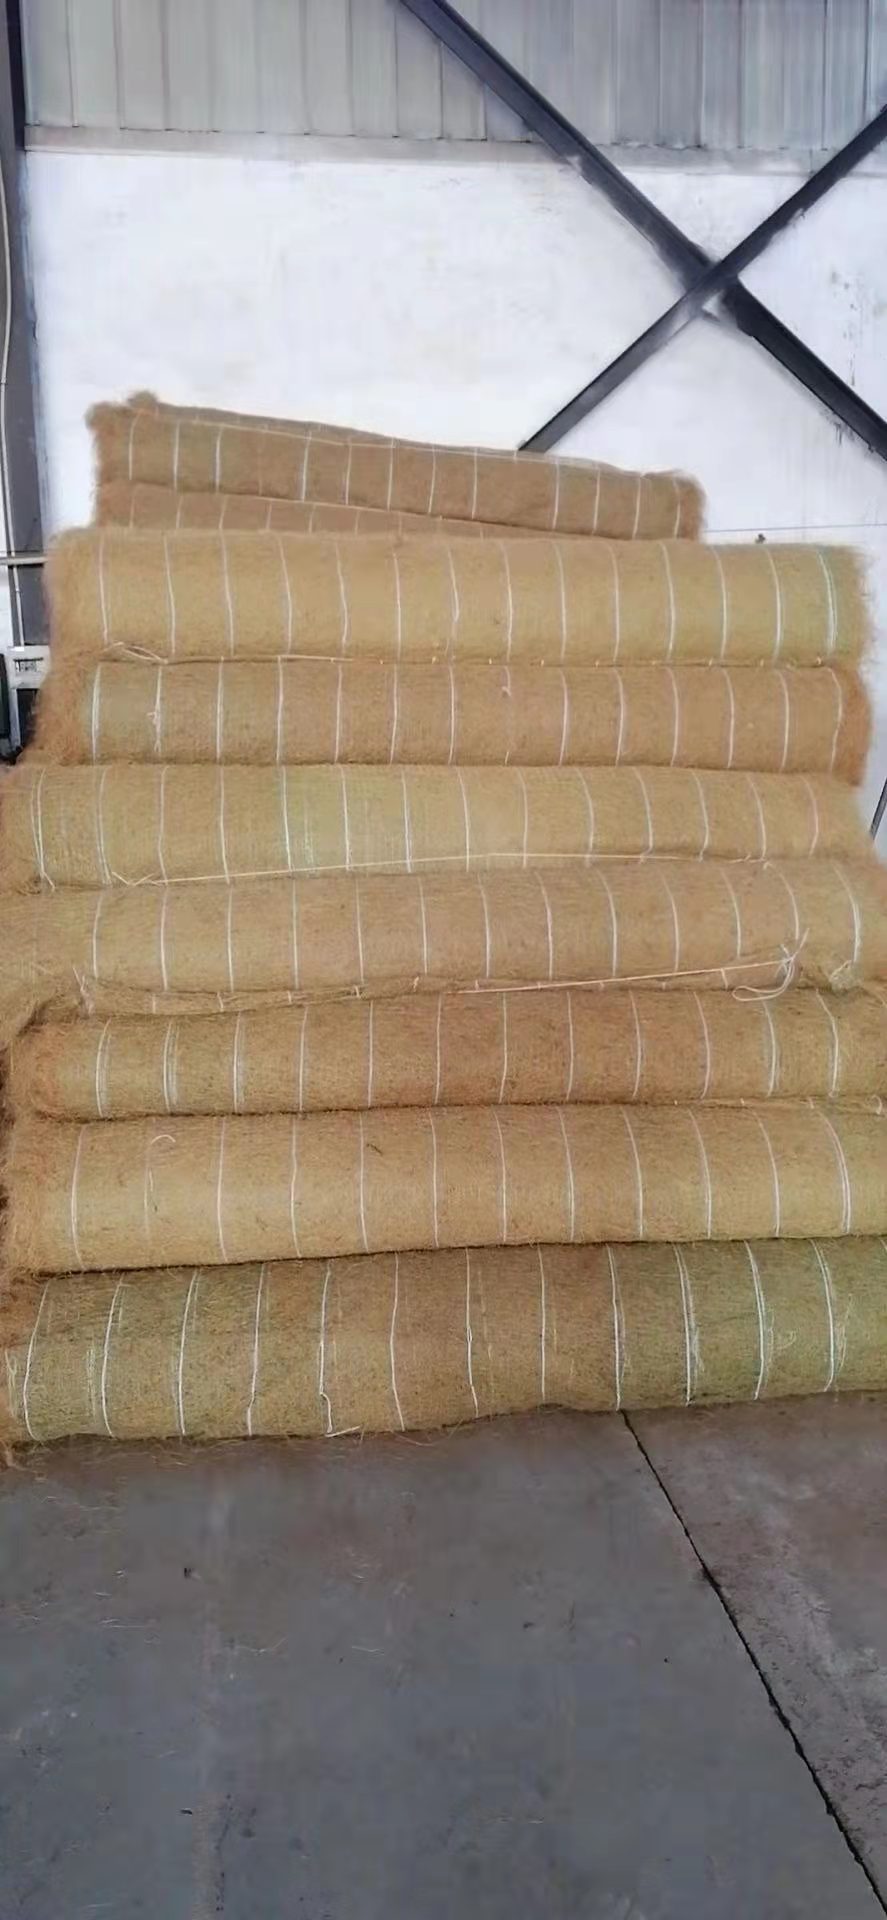 阿拉善盟椰丝抗冲刷毯生产厂家实业公司